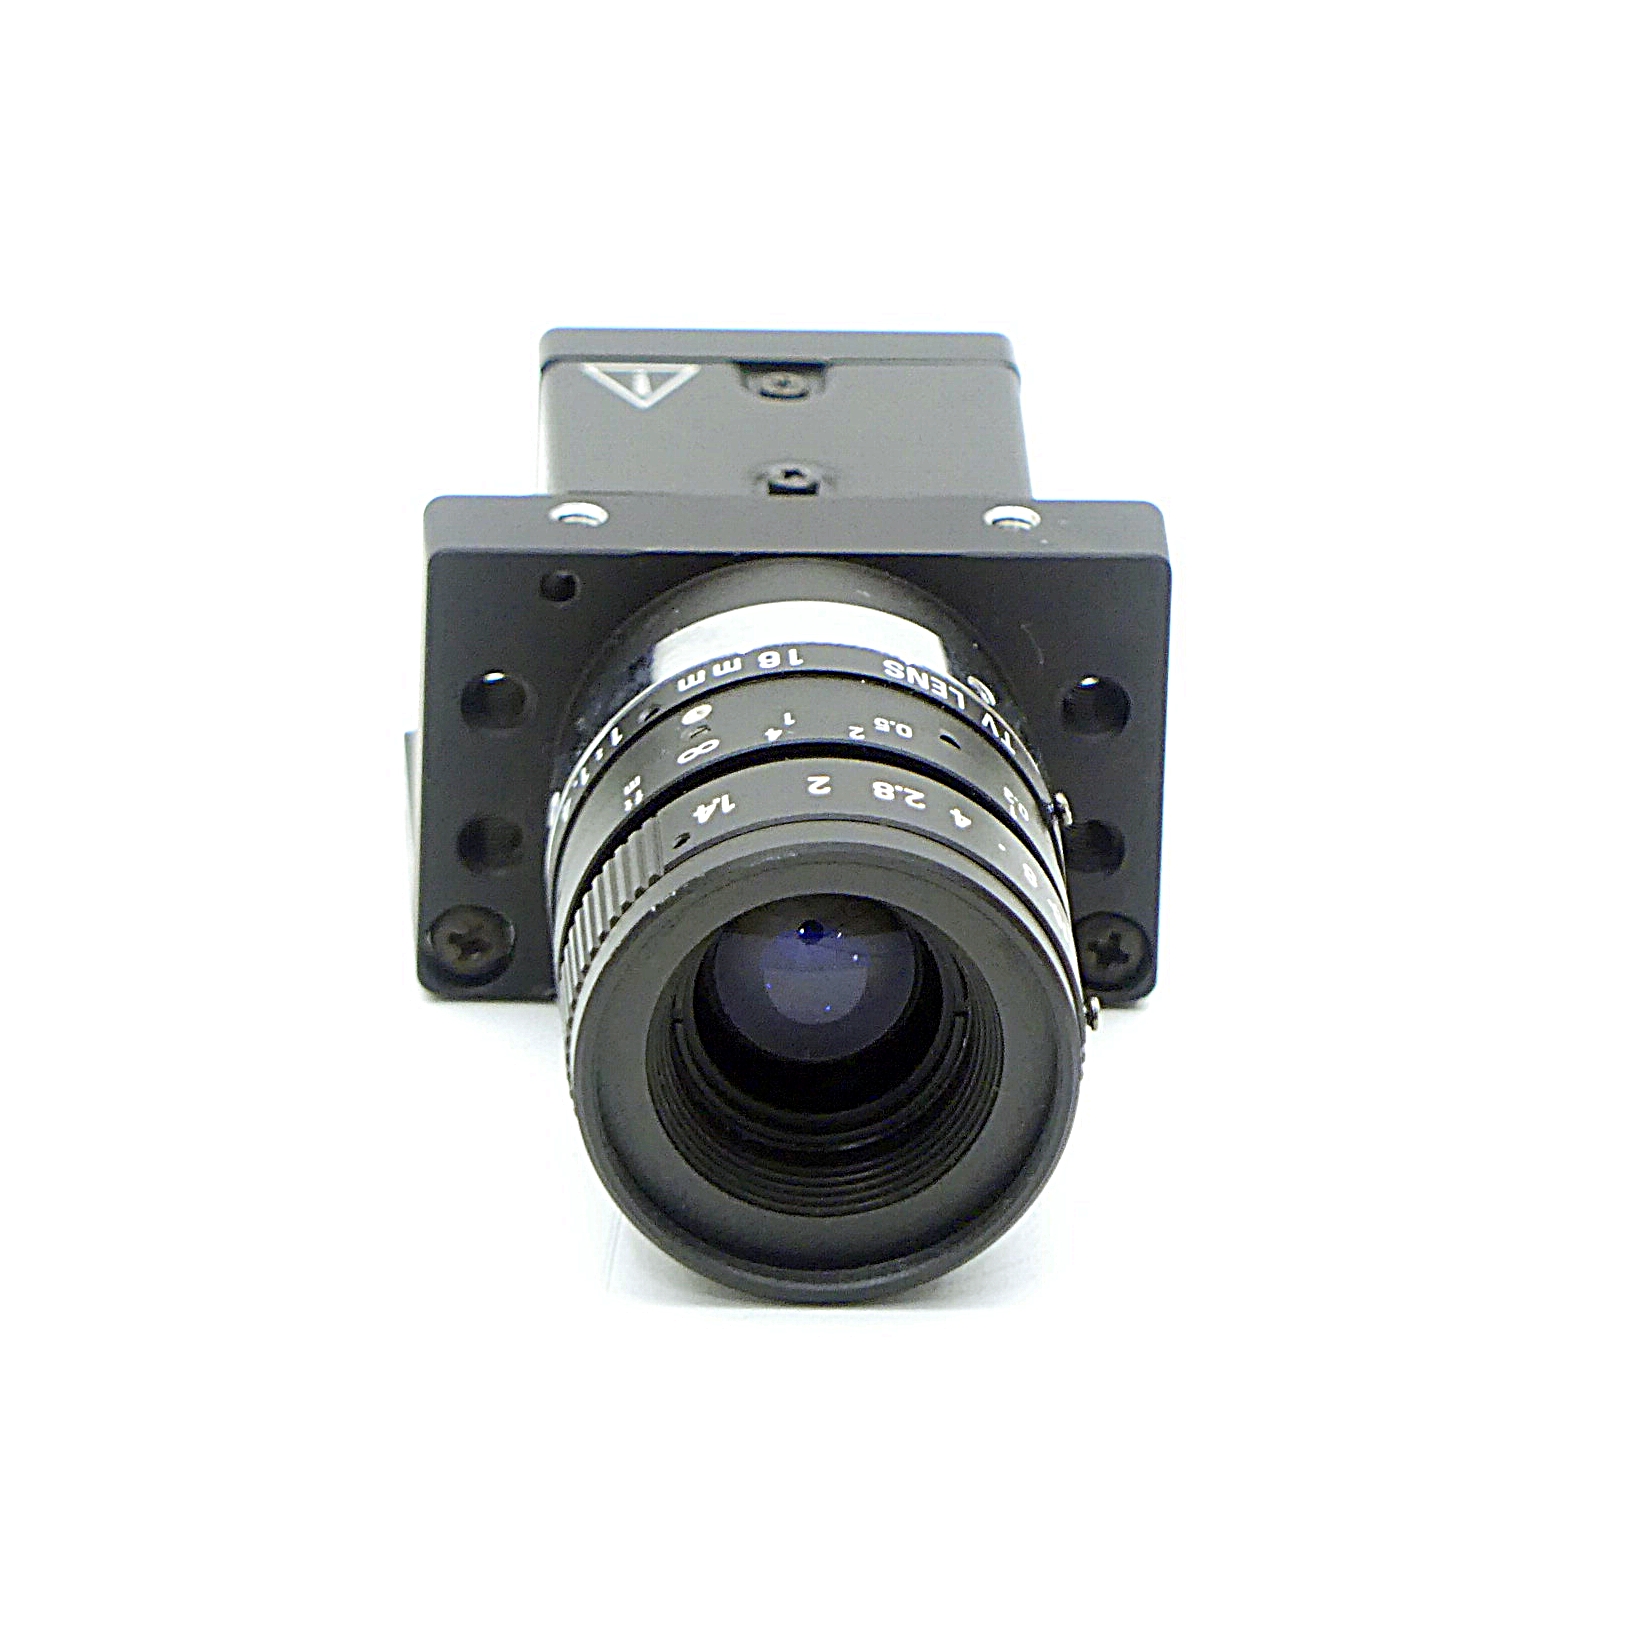 Industriekamera CCD XC-ES50 